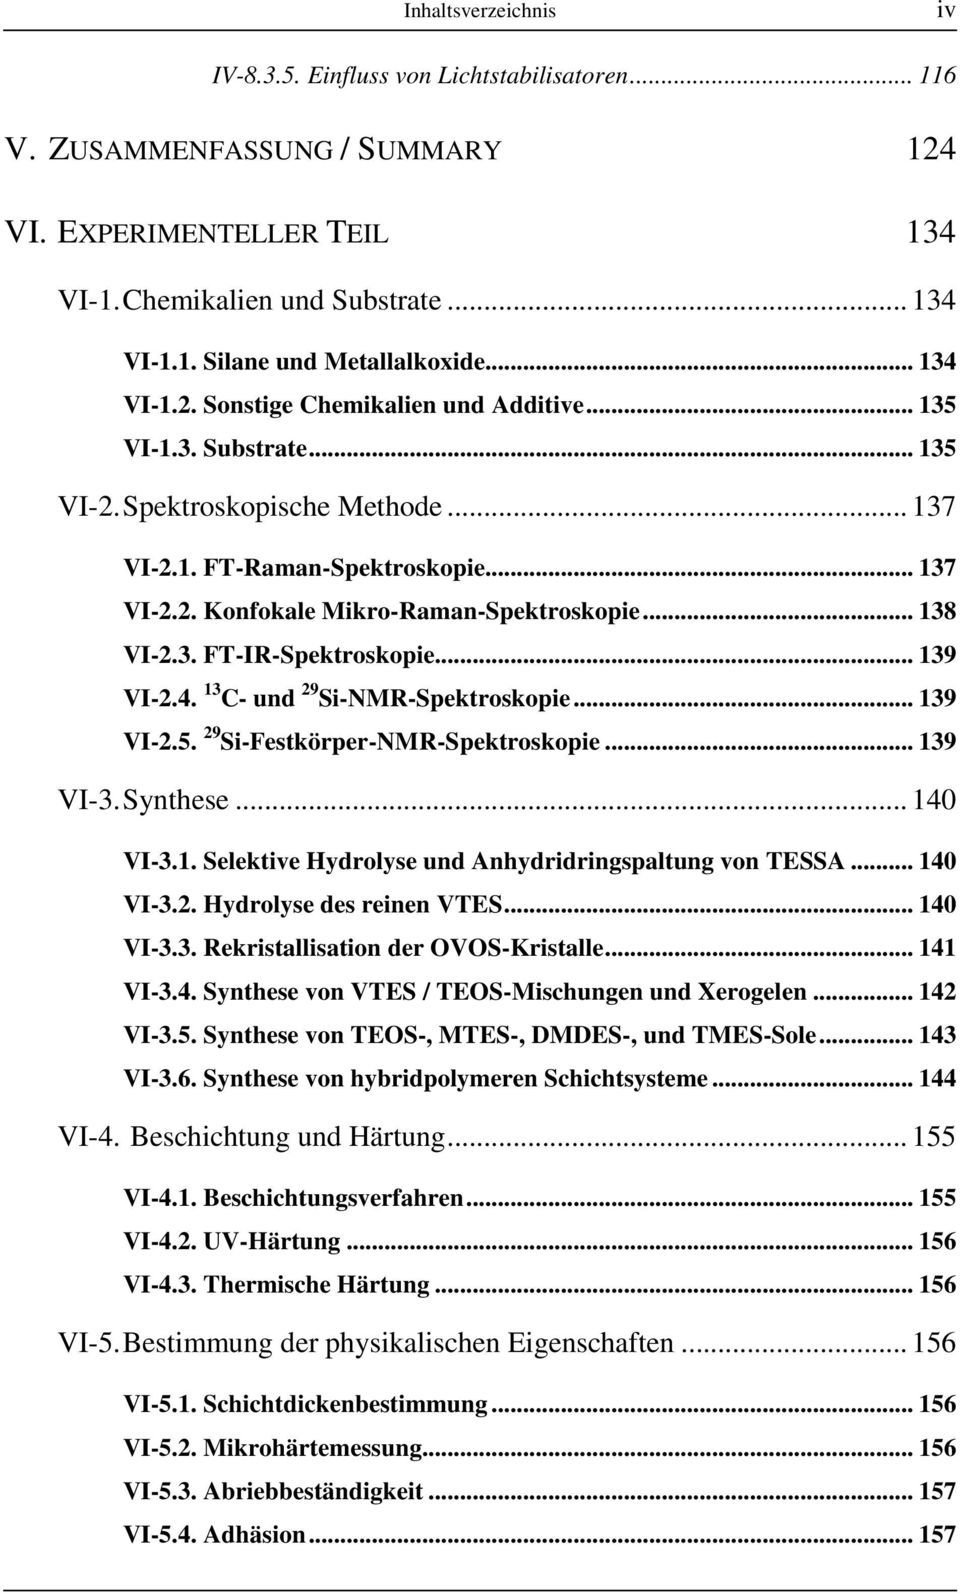 .. 138 VI-2.3. FT-IR-Spektroskopie... 139 VI-2.4. 13 C- und 29 -NMR-Spektroskopie... 139 VI-2.5. 29 -Festkörper-NMR-Spektroskopie... 139 VI-3. Synthese... 140 VI-3.1. Selektive Hydrolyse und Anhydridringspaltung von TESSA.